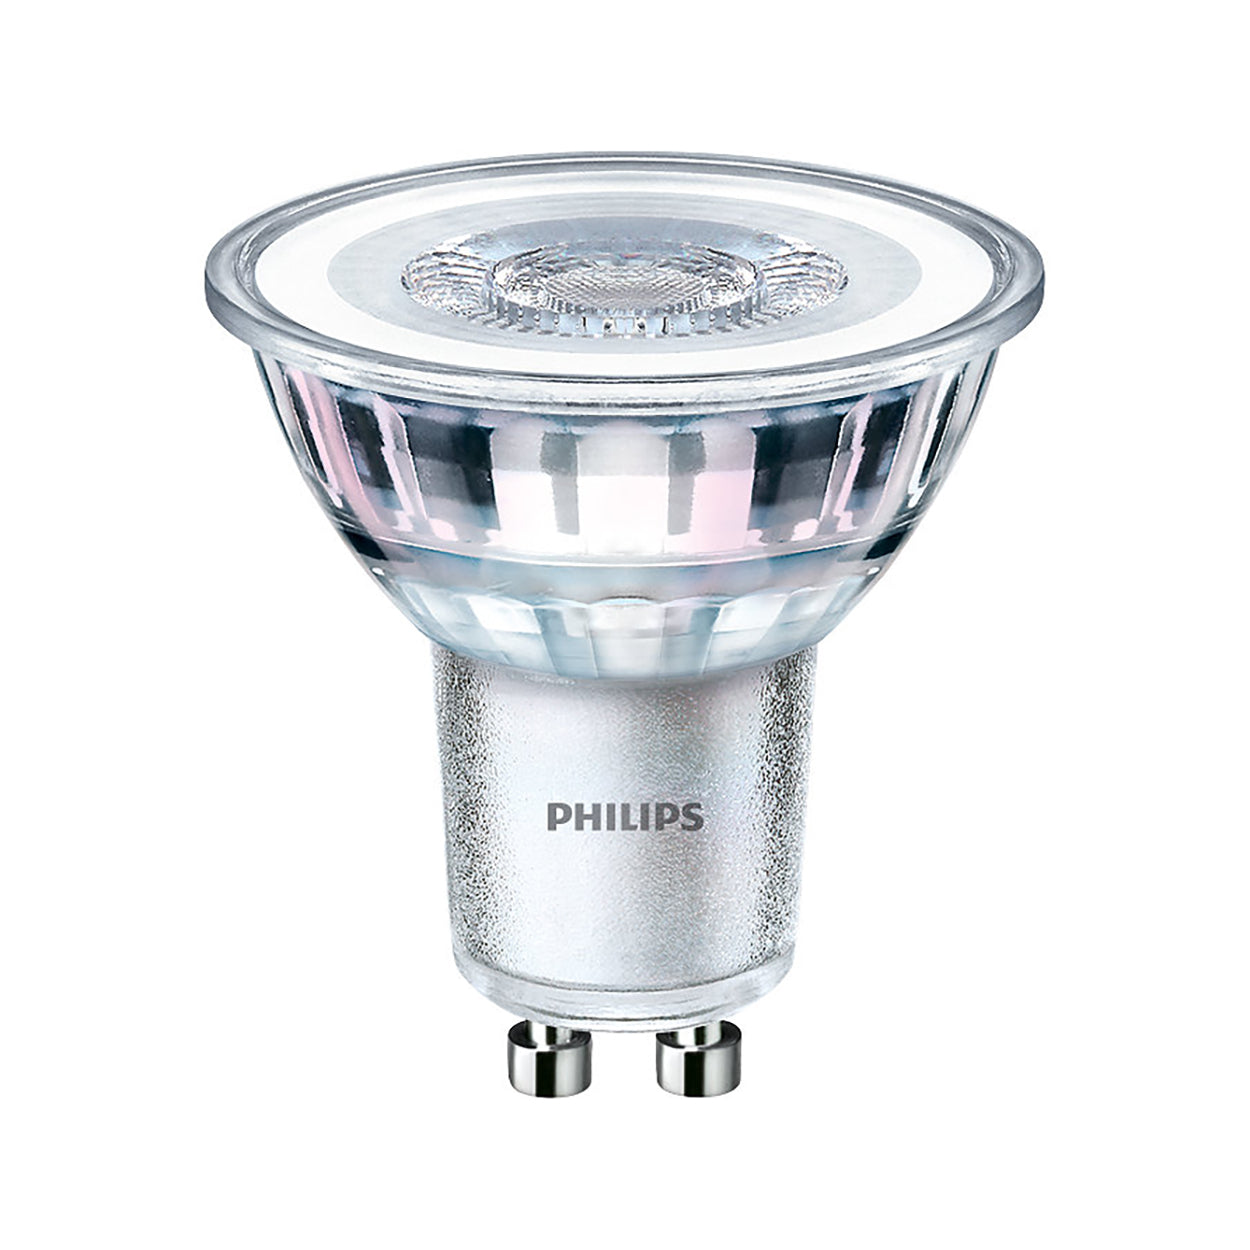 Philips Classic LED spot dublu cu LED-uri 4,6-50W GU10 827 36° 355lm